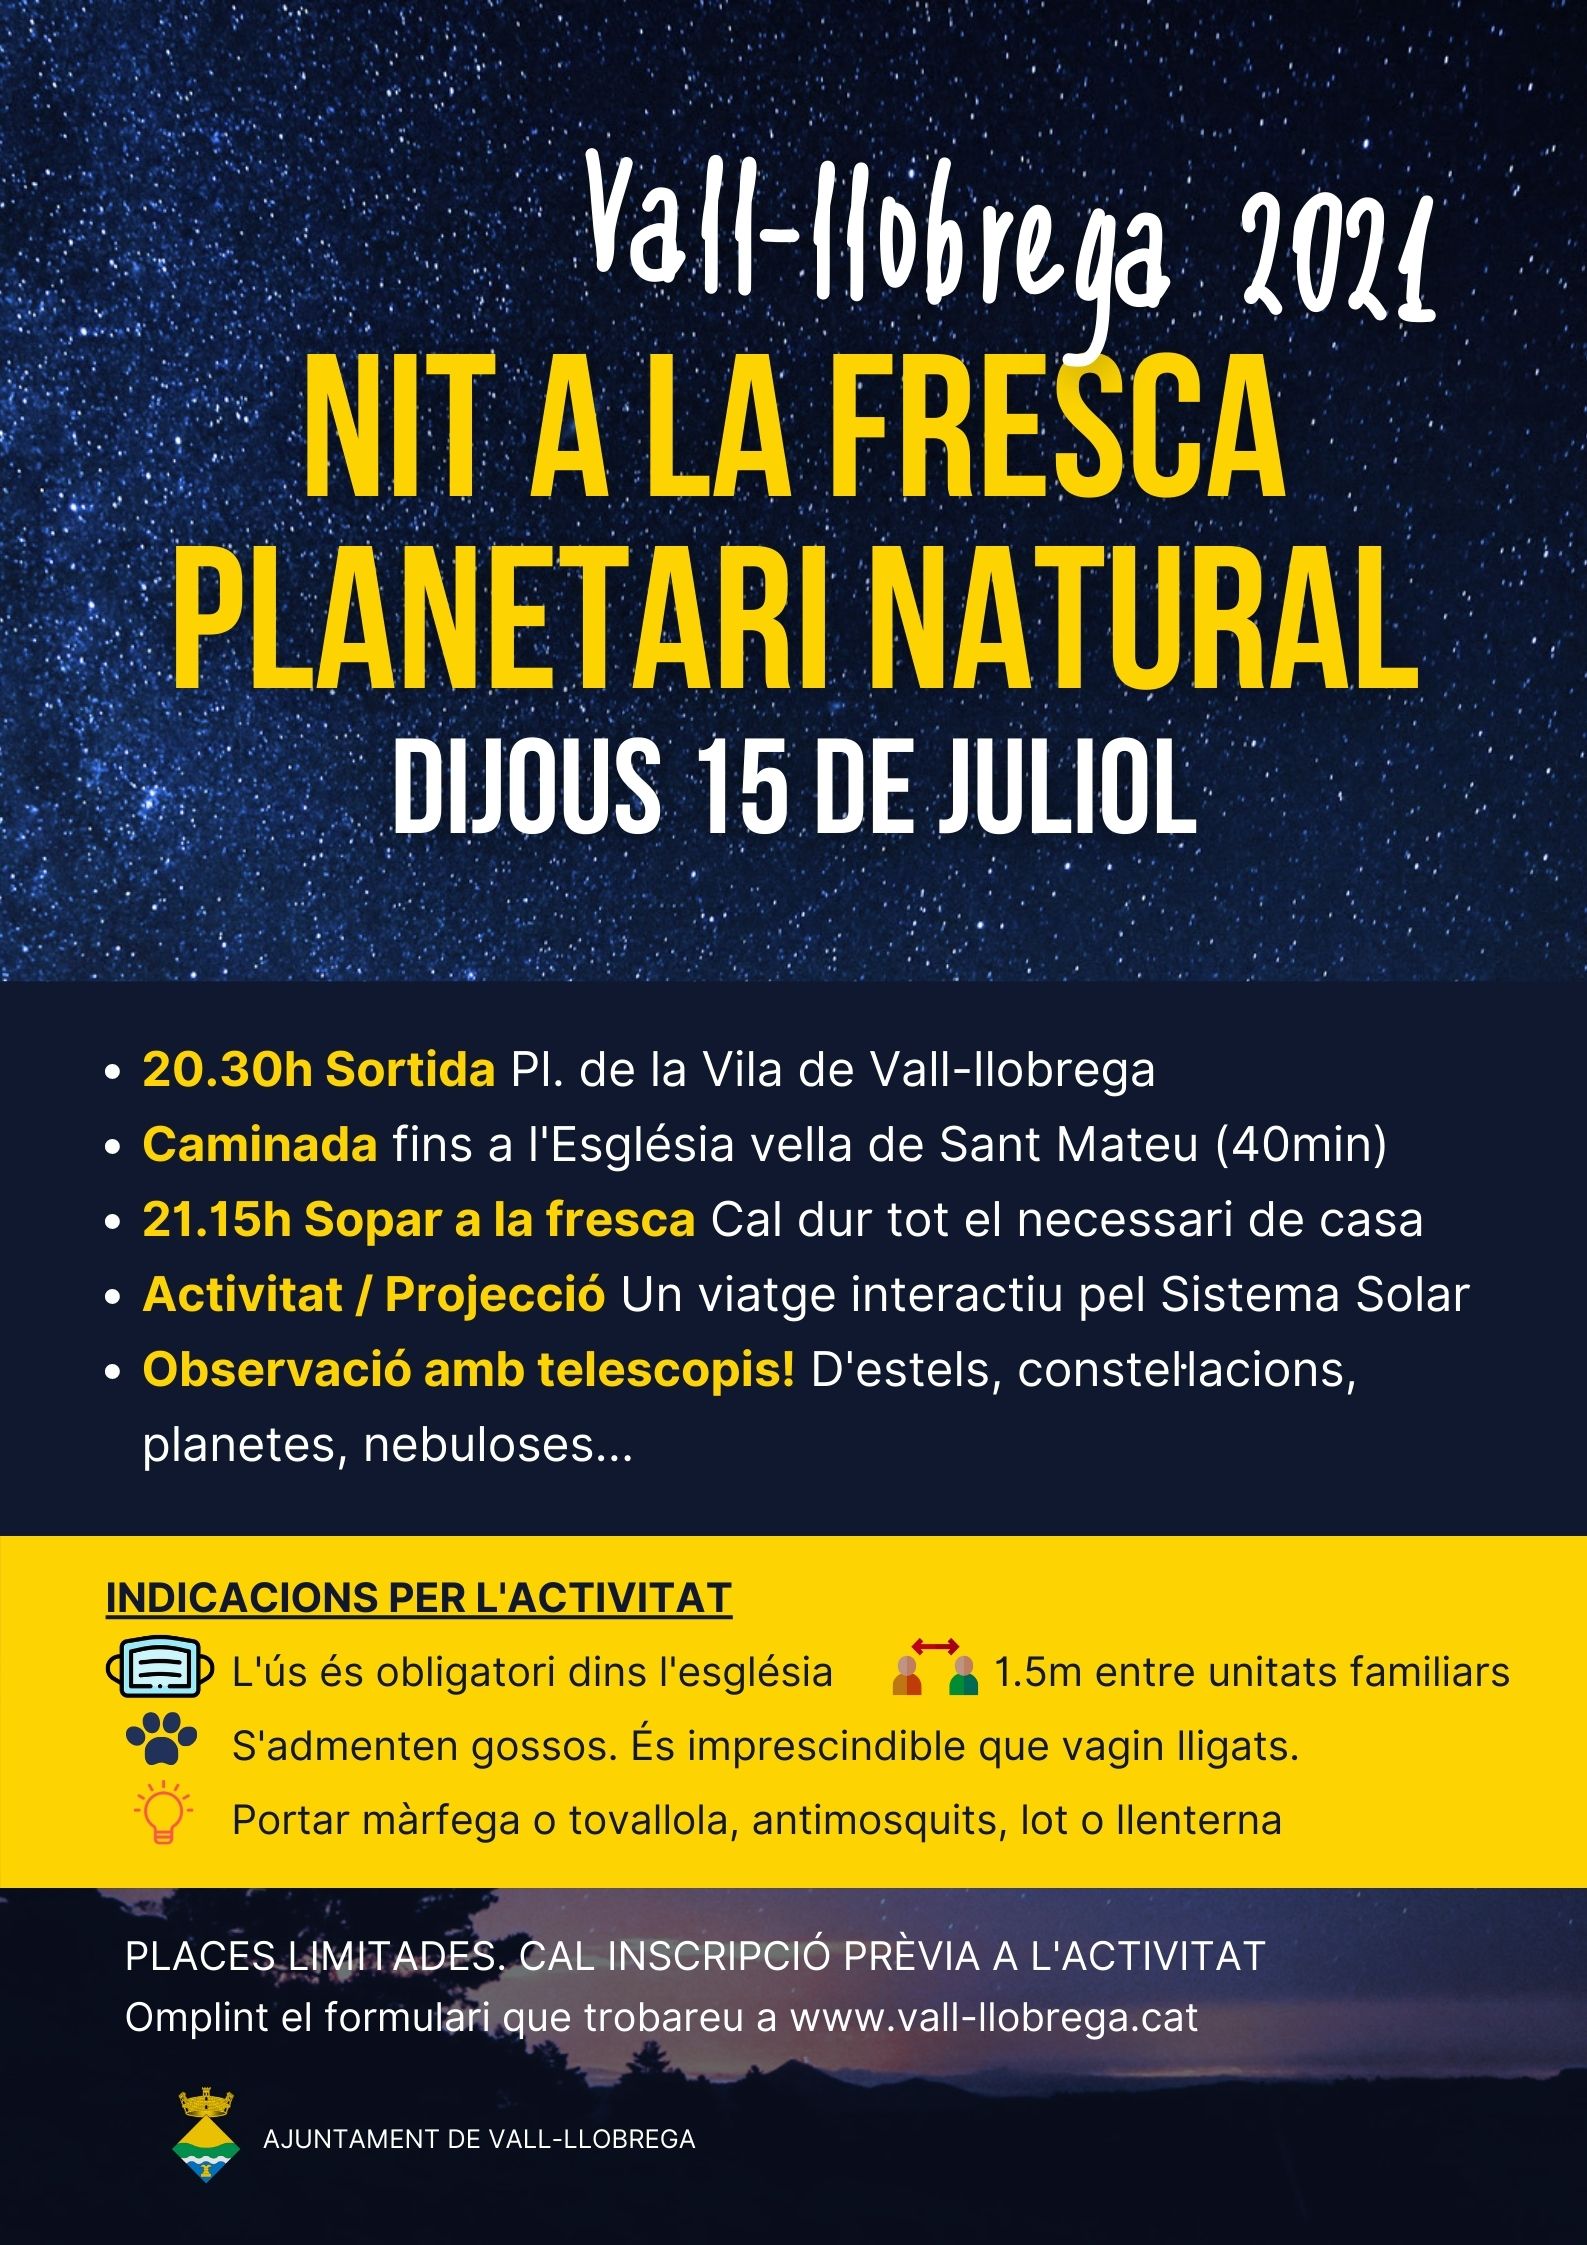 Planetari natural a Vall-llobrega